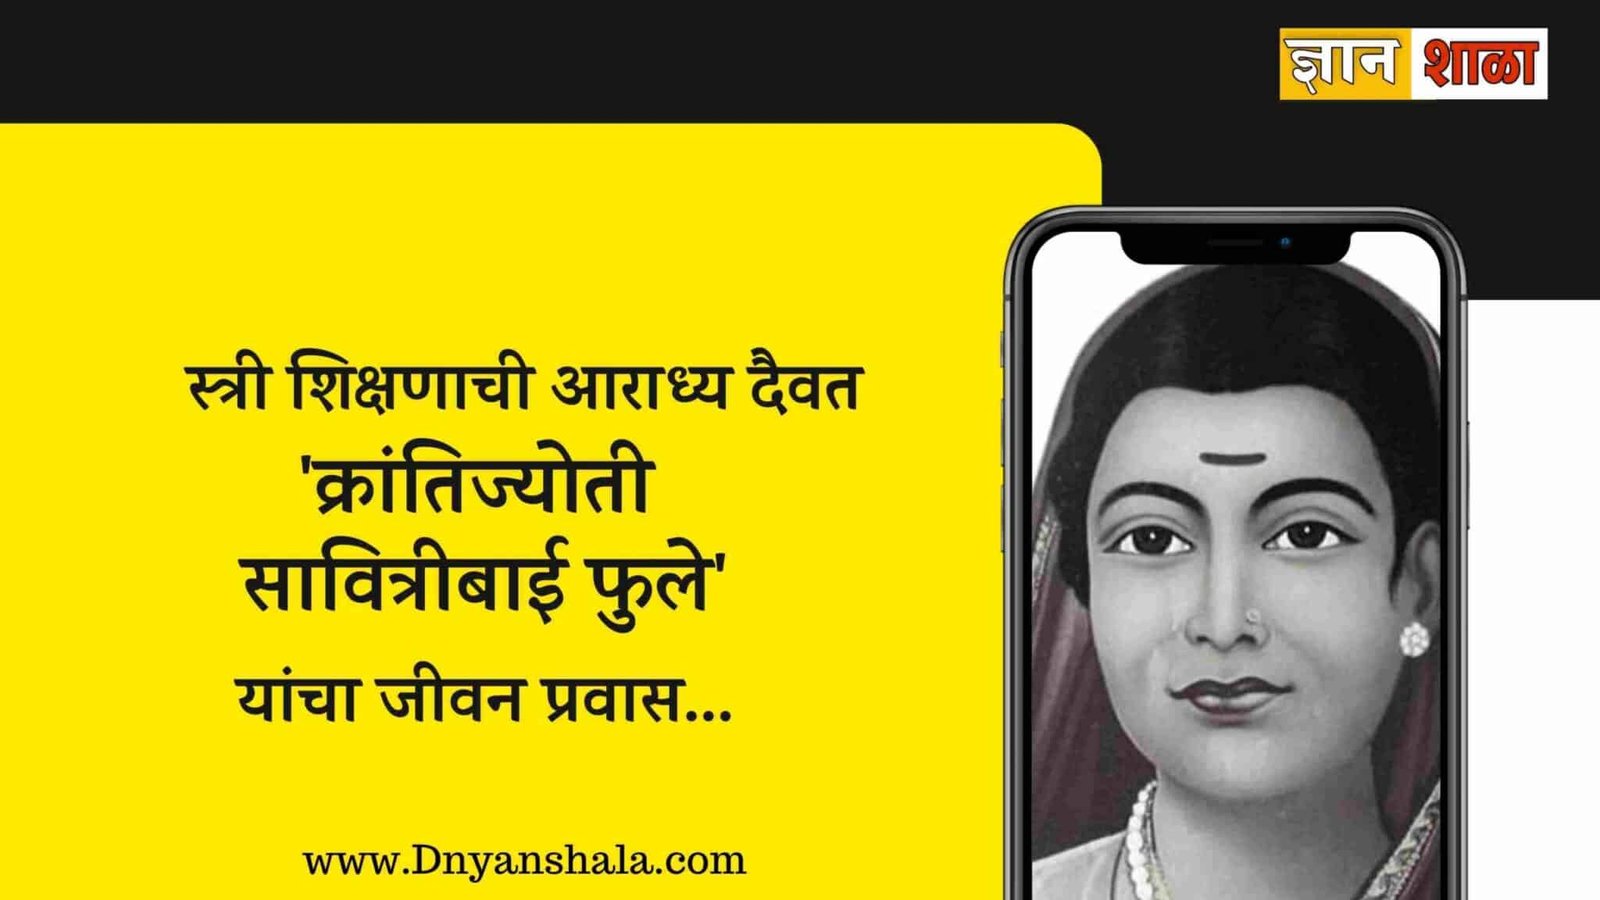 savitribai phule biography in marathi